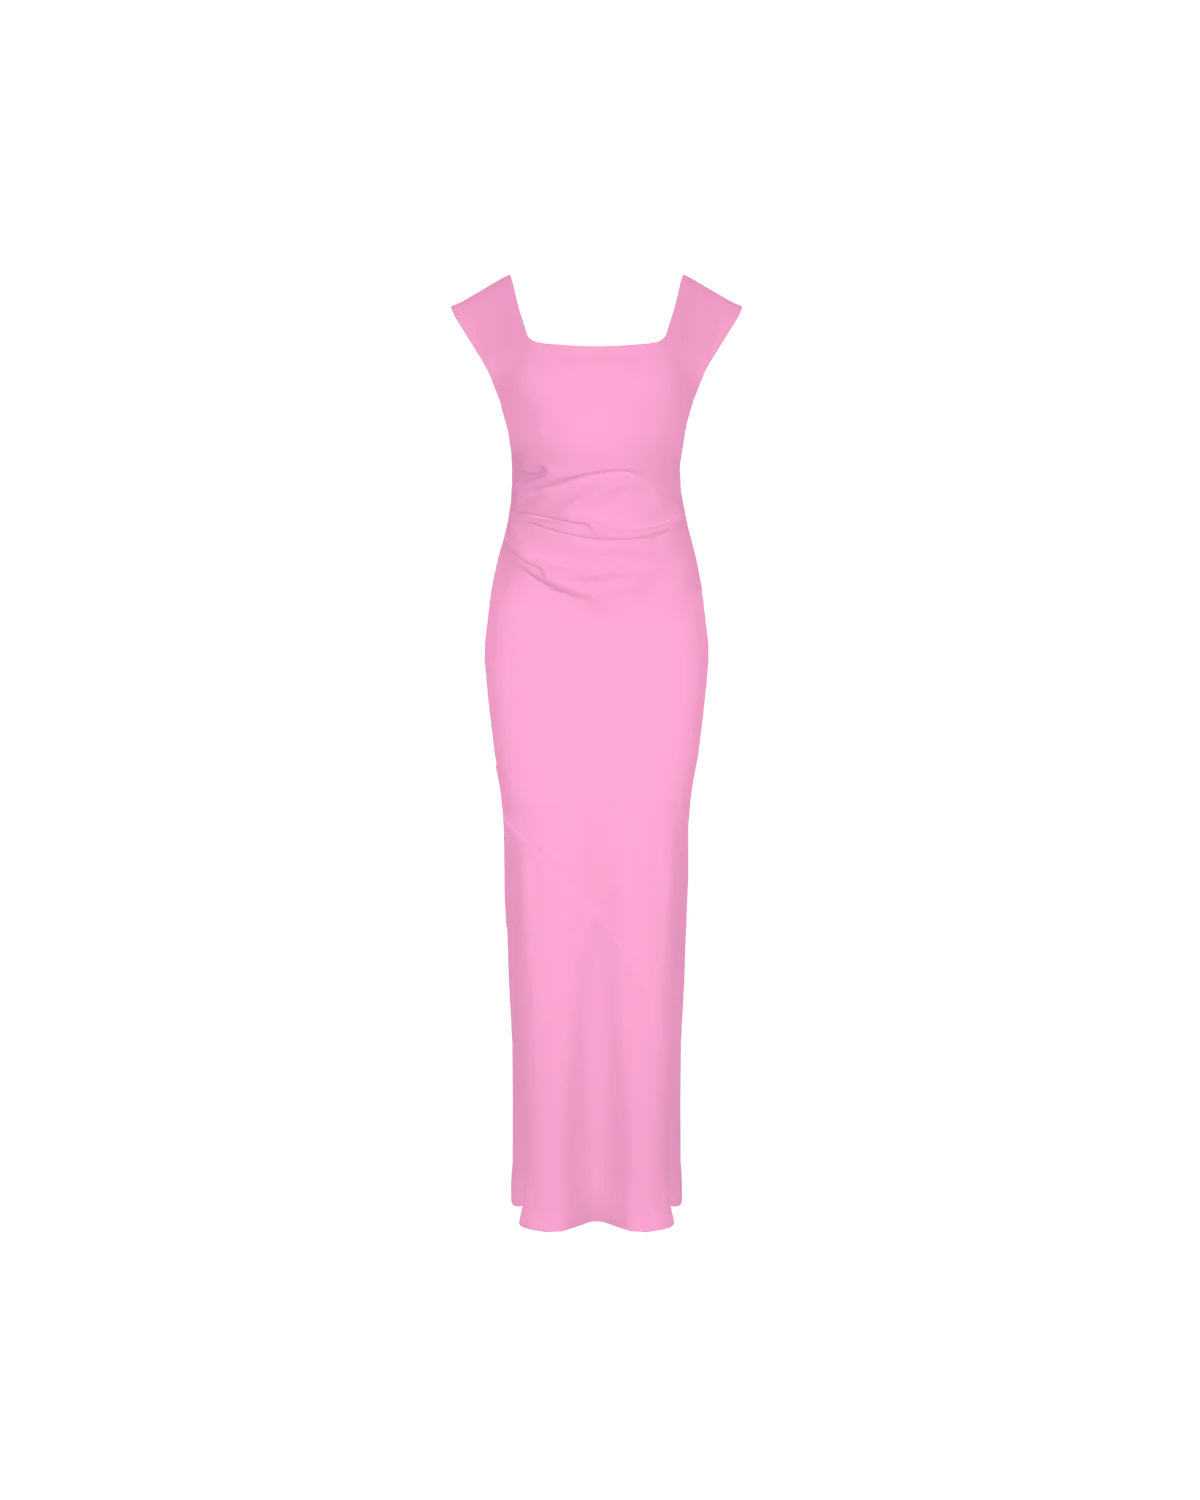 Cameron Dress (Pink)